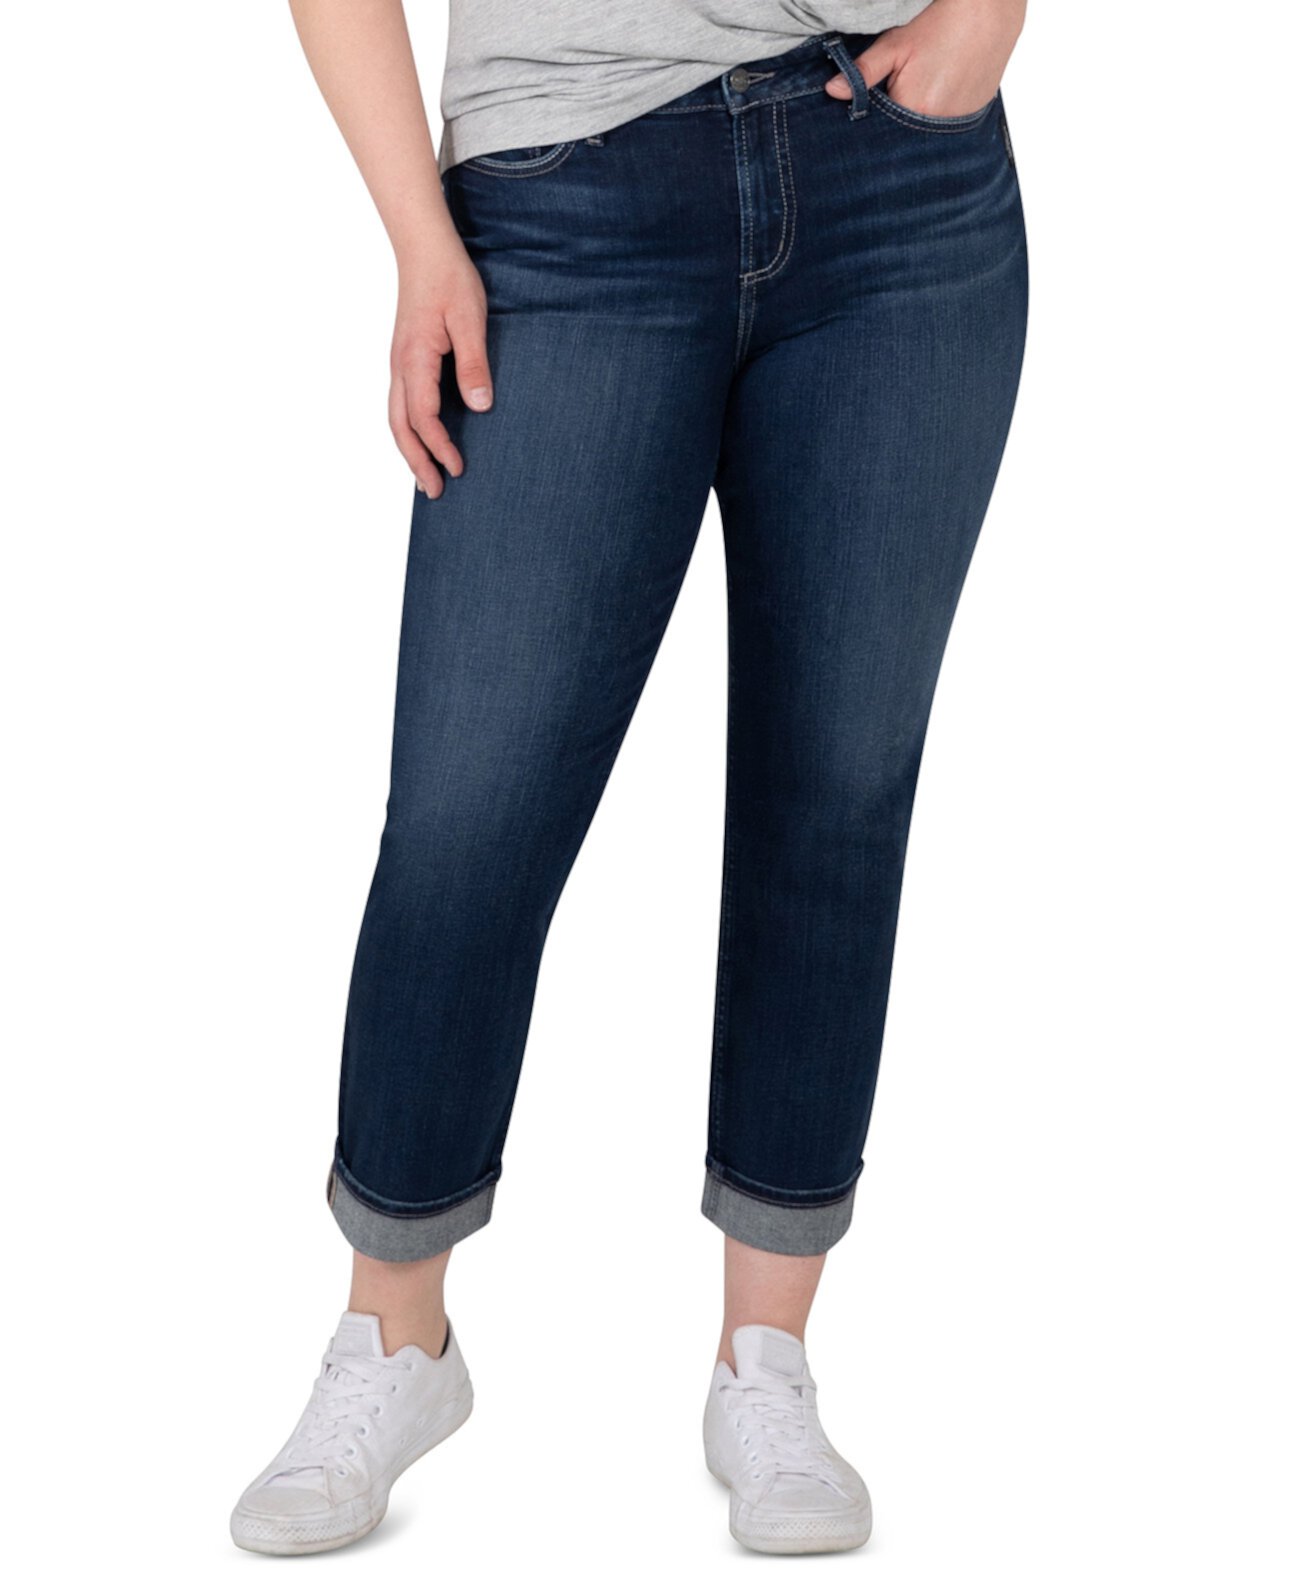 Укороченные прямые джинсы Avery больших размеров Silver Jeans Co.